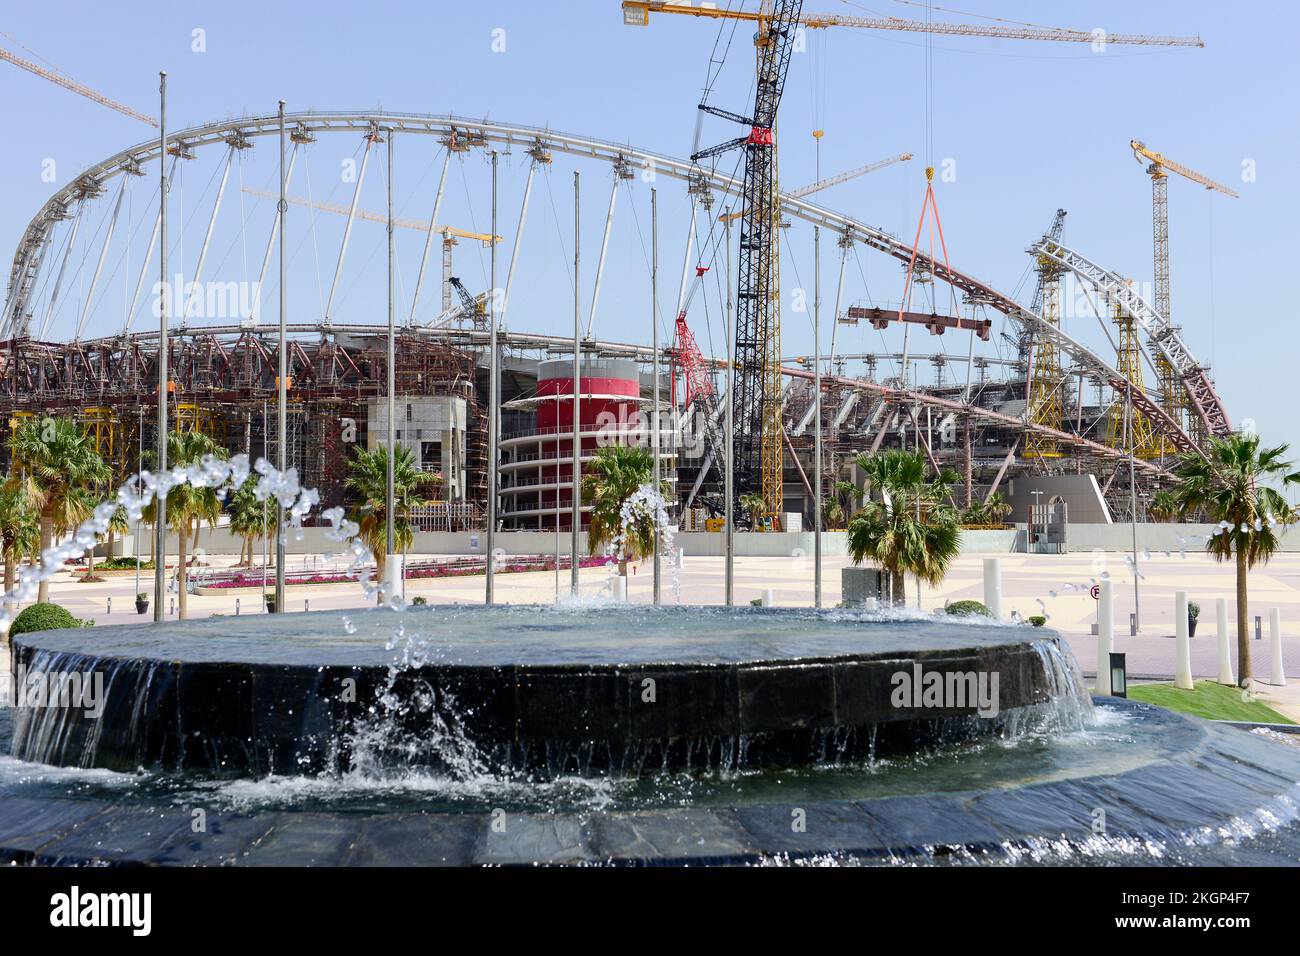 KATAR, Doha, Baustelle Khalifa International Stadion für die FIFA Weltmeisterschaft 2022, gebaut vom Auftragnehmer Midmac und sixt Contract, die Arbeit wird von Wanderarbeitern / KATAR, Doha, Baustelle Khalifa International Stadium für die FIFA Fussballmeisterschaft 2022, auf den Ländern Gastarbeitern aus verschiedenen Baustellen geleistet Stockfoto